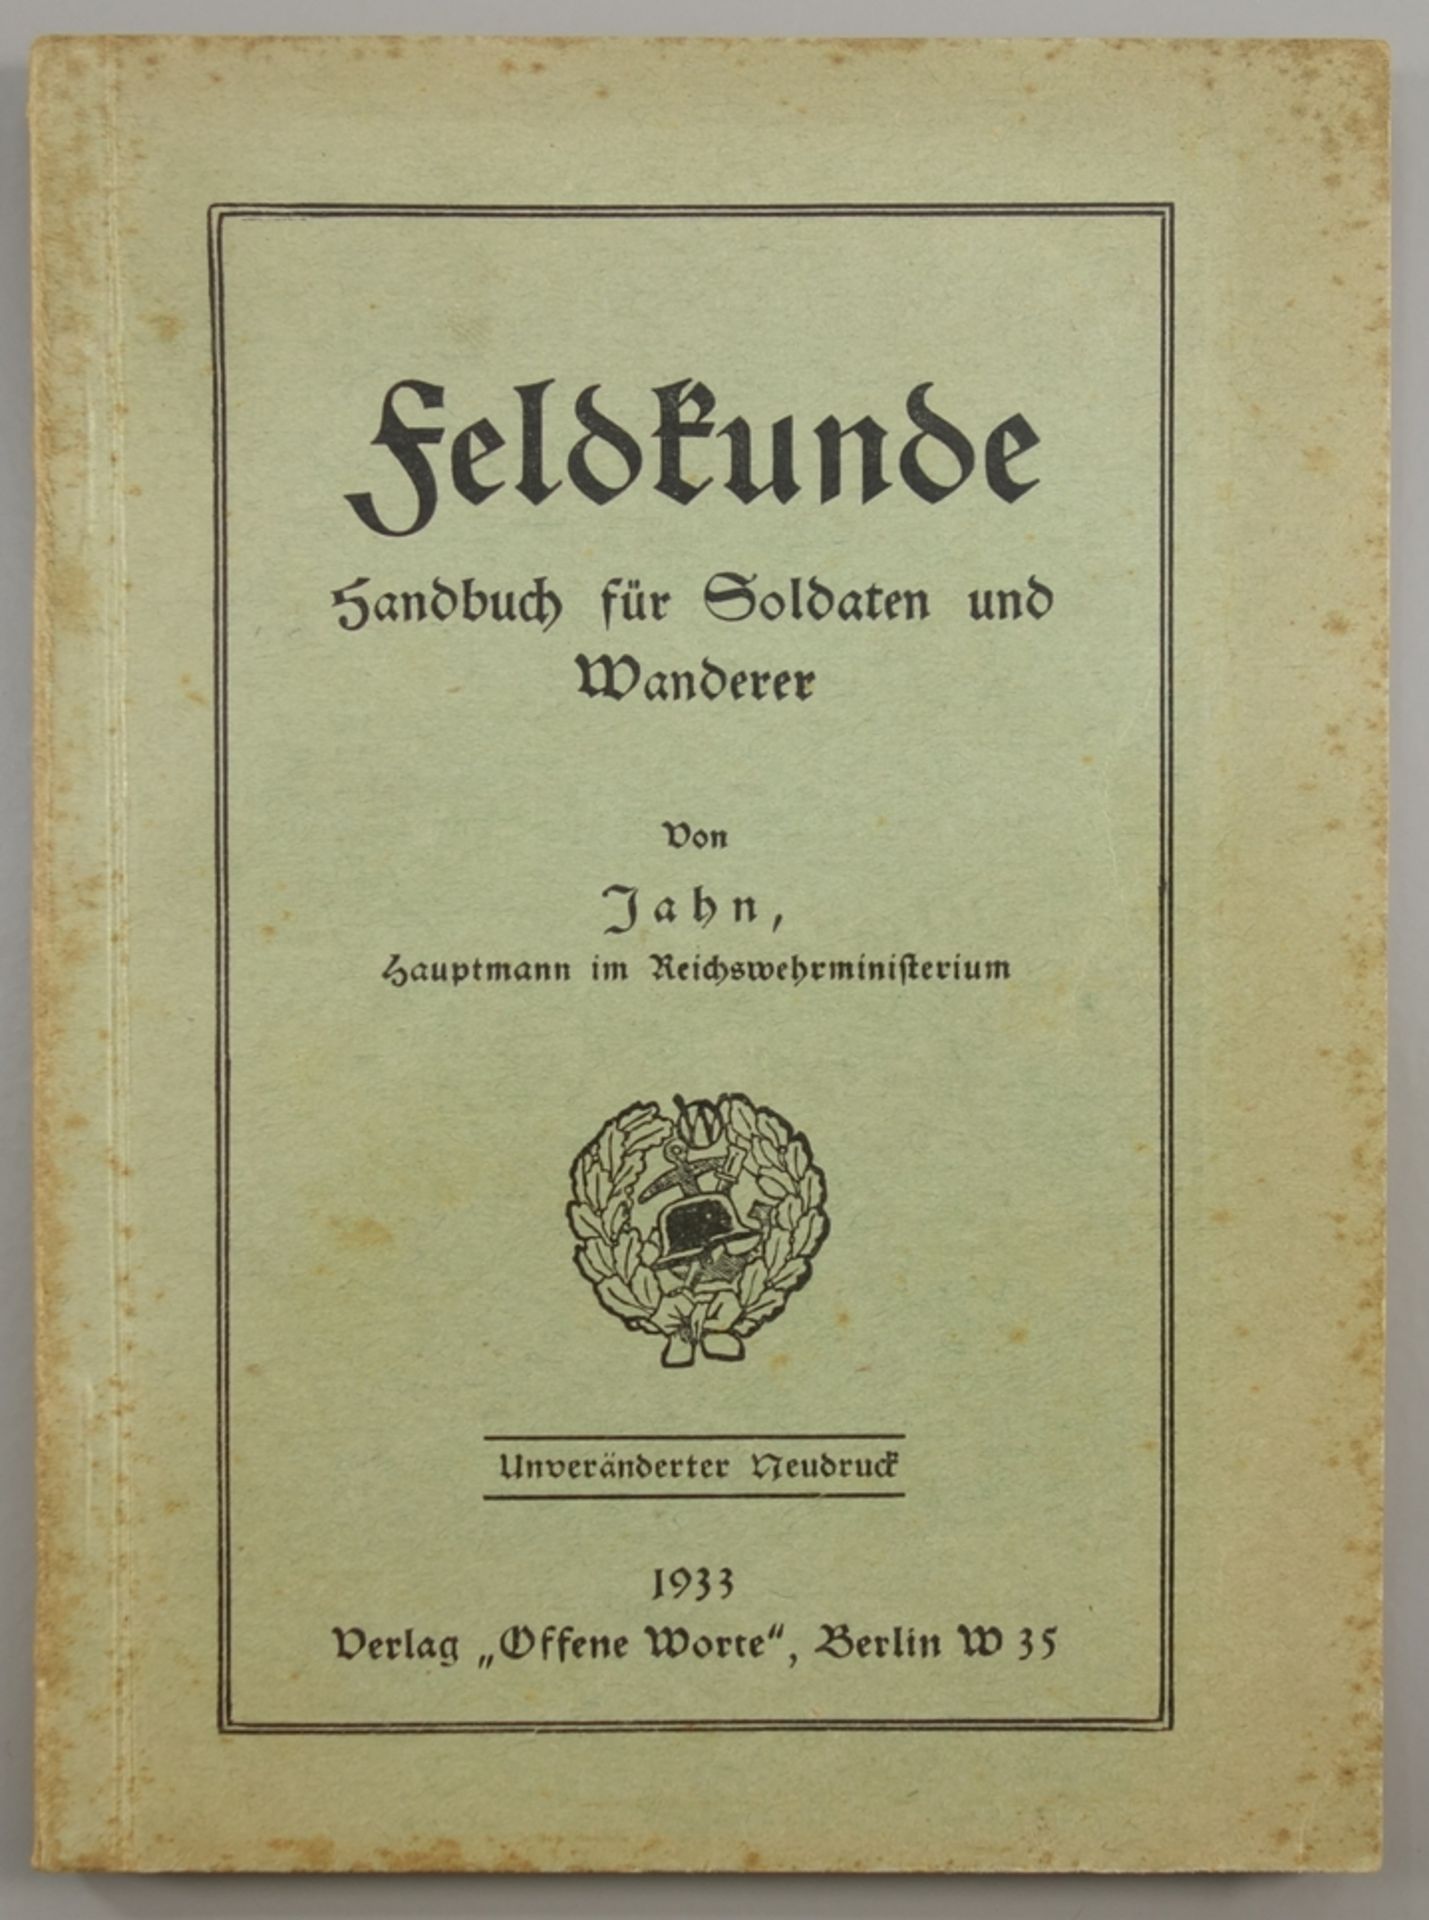 Feldkunde - Handbuch für Soldaten und Wanderer, 1933, von Jahn, Hauptmann im